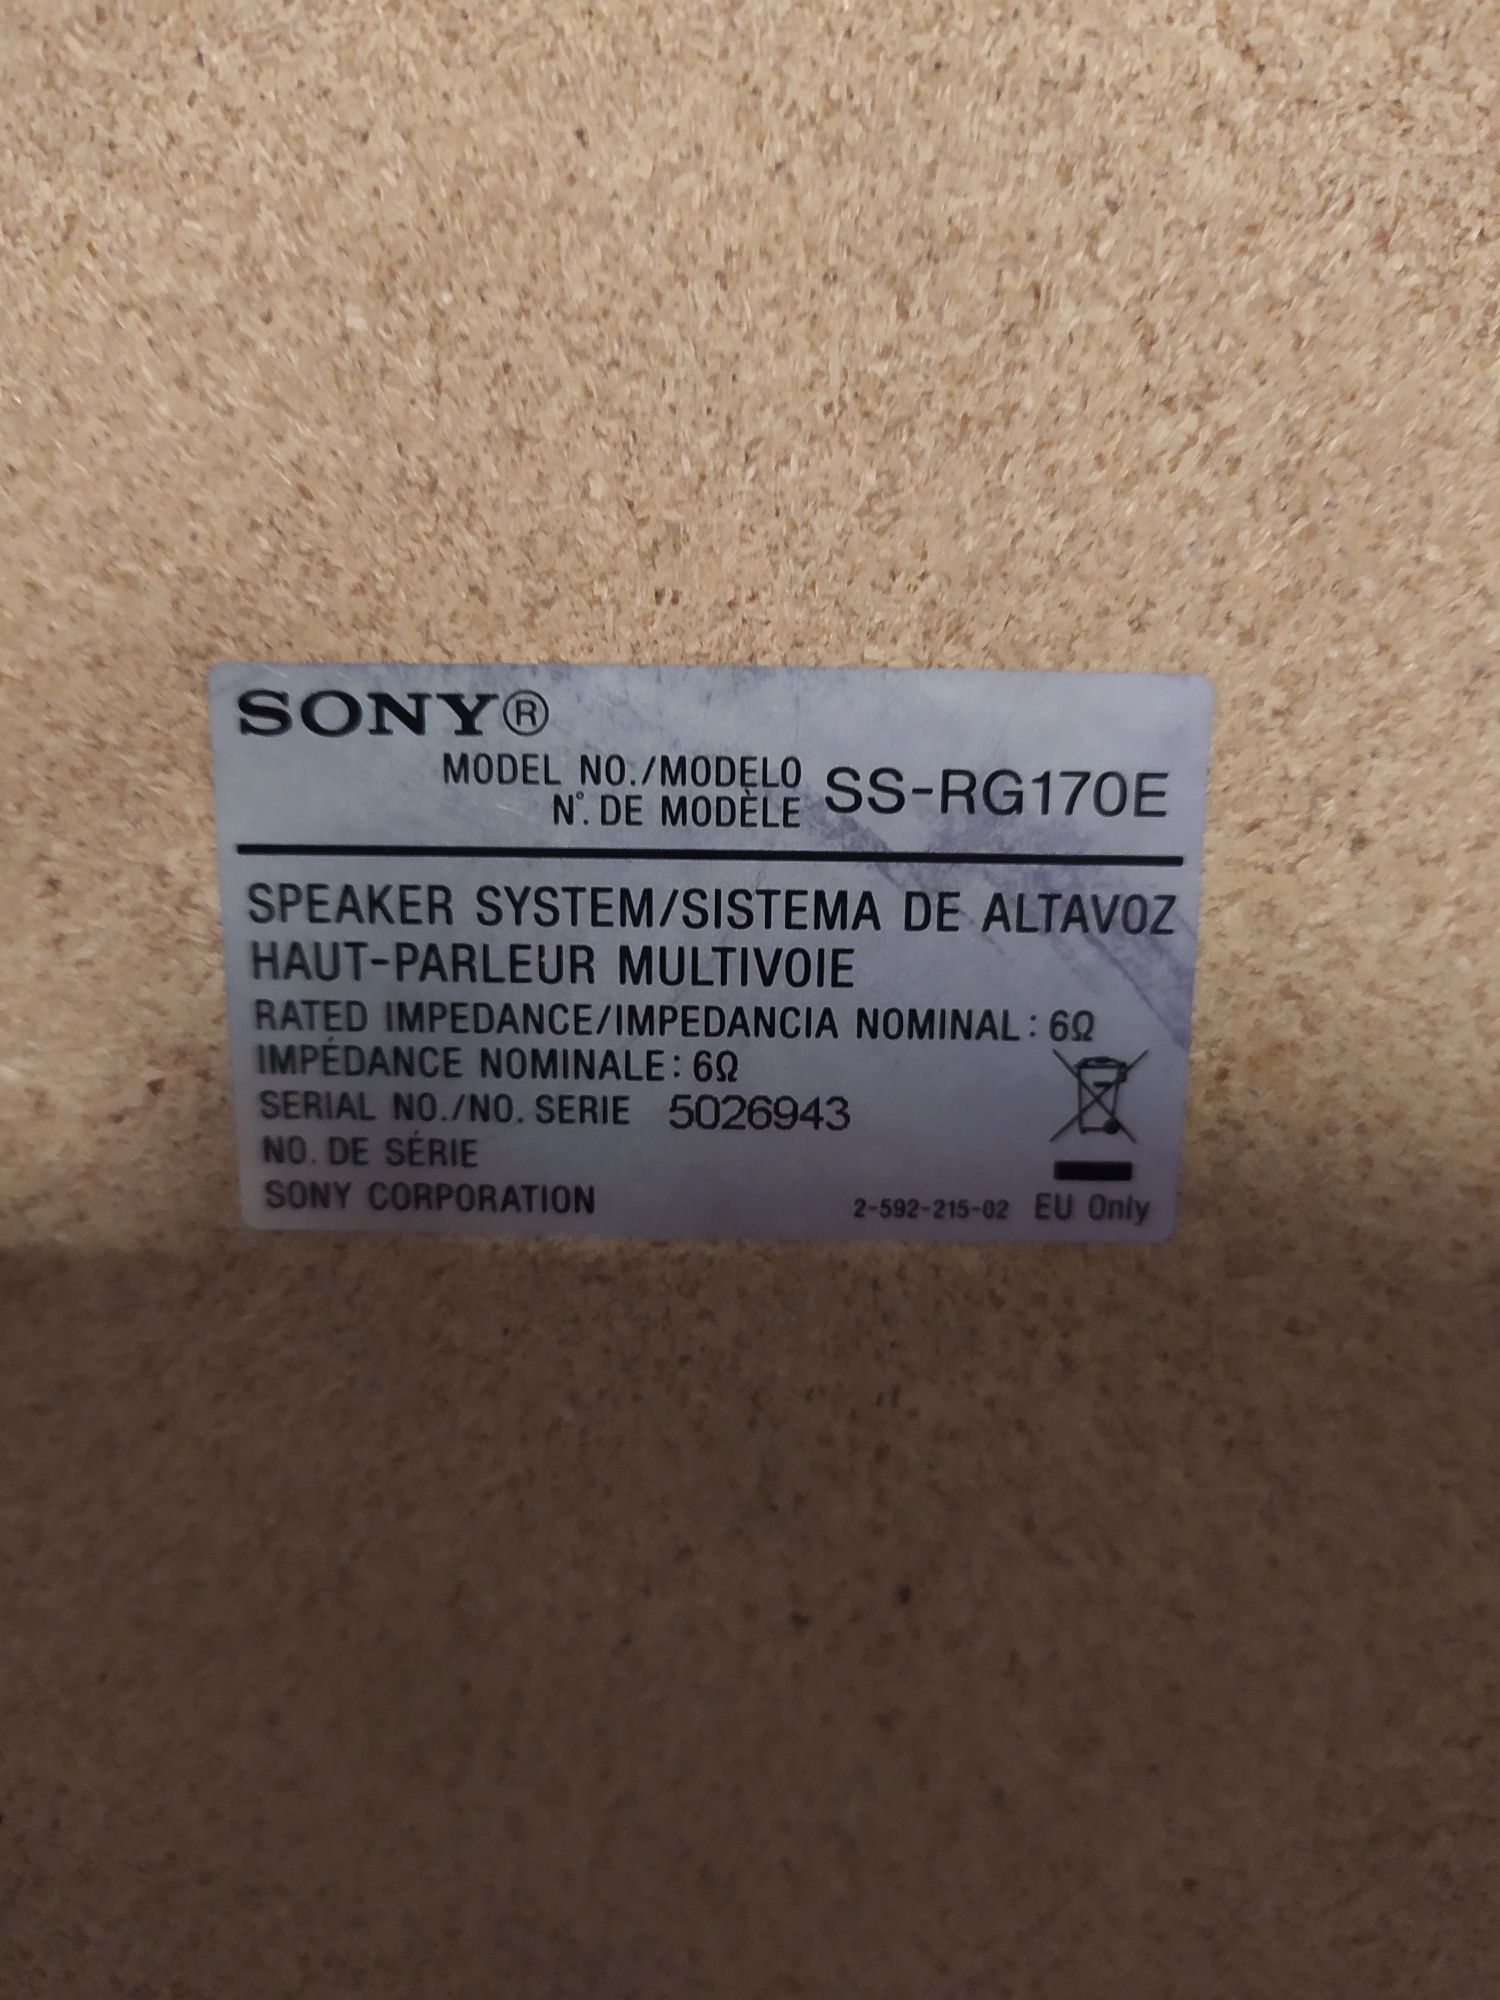 Okazja 2 duże głośniki Sony RG170E